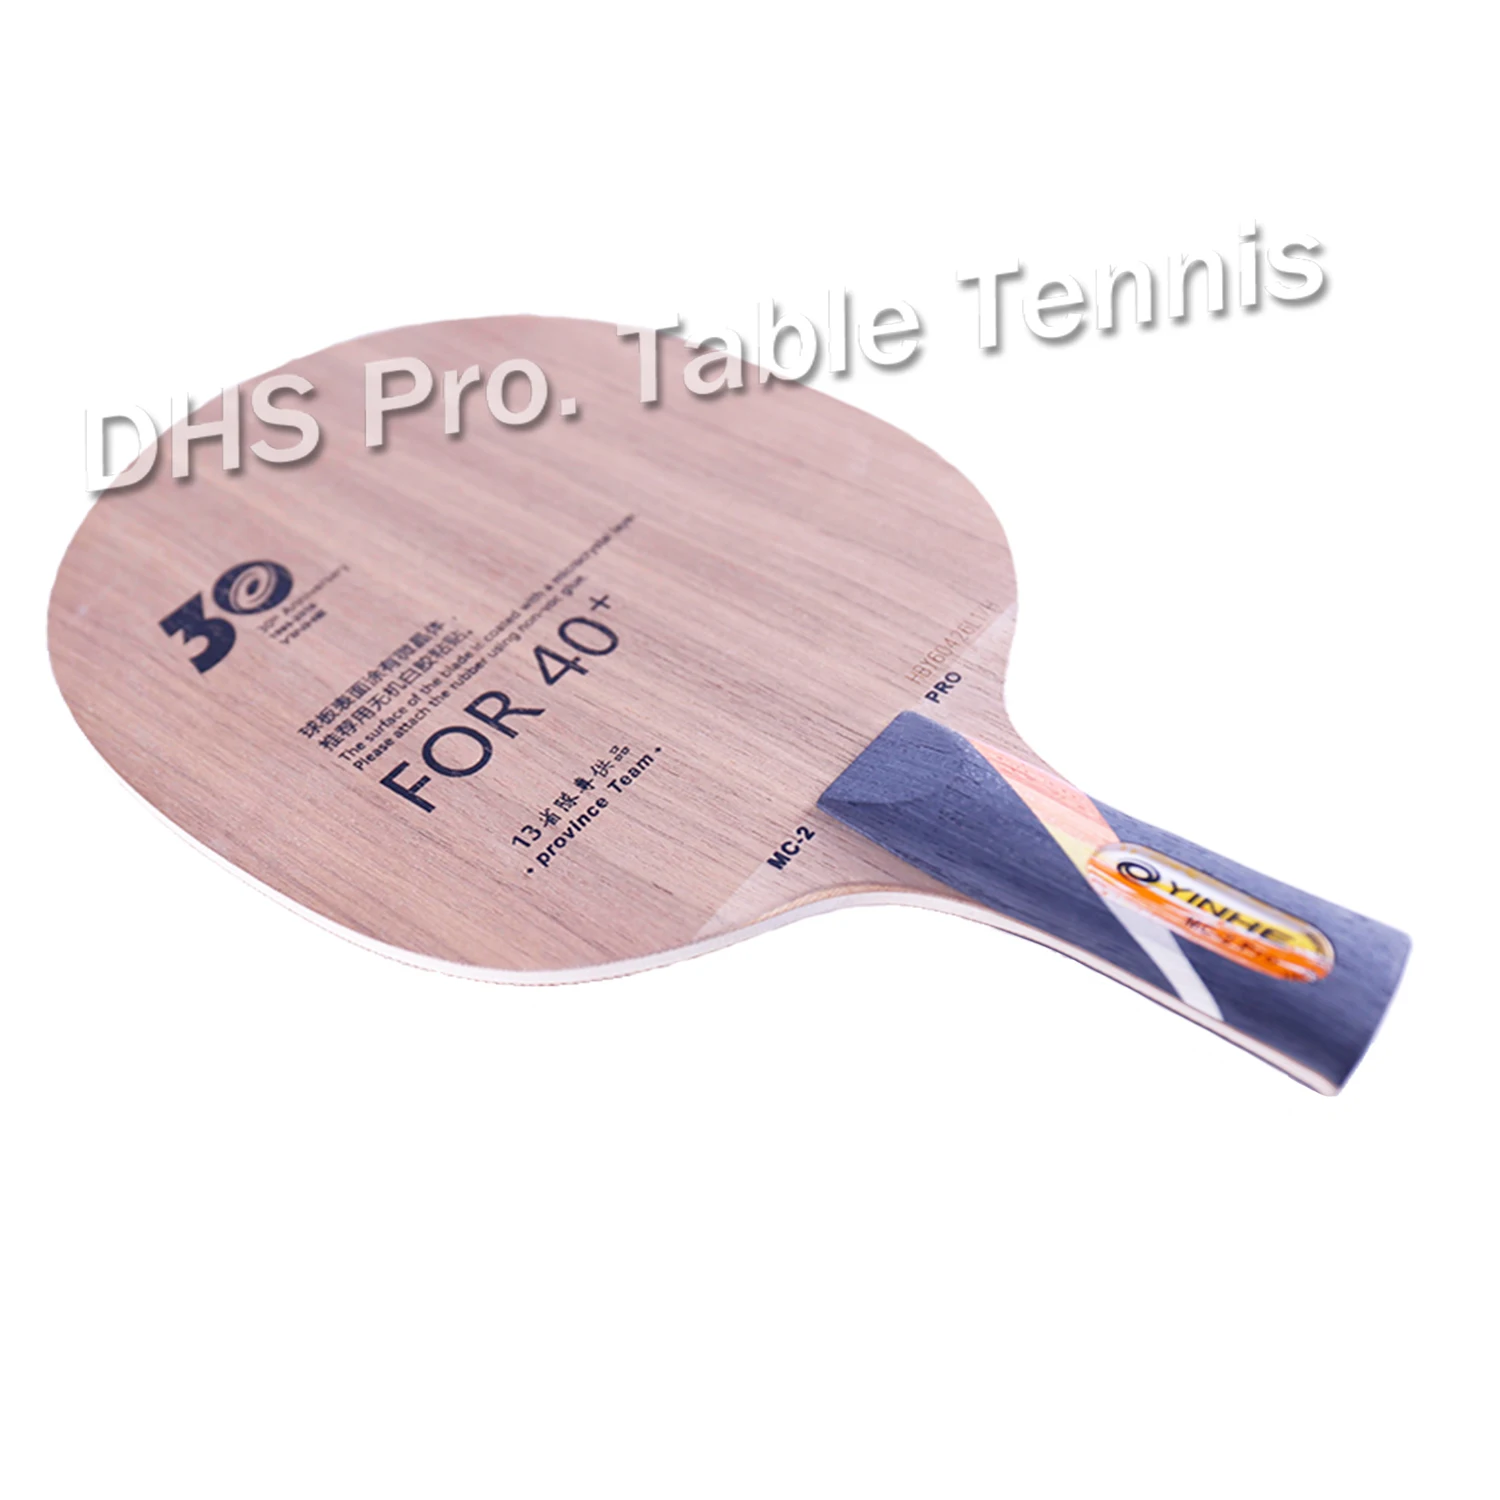 YINHE Galaxy MC2 PRO Provincial(MC-2 PRO, 5 слоев дерева, 30-летняя версия) лезвие для настольного тенниса ракетка для пинг-понга